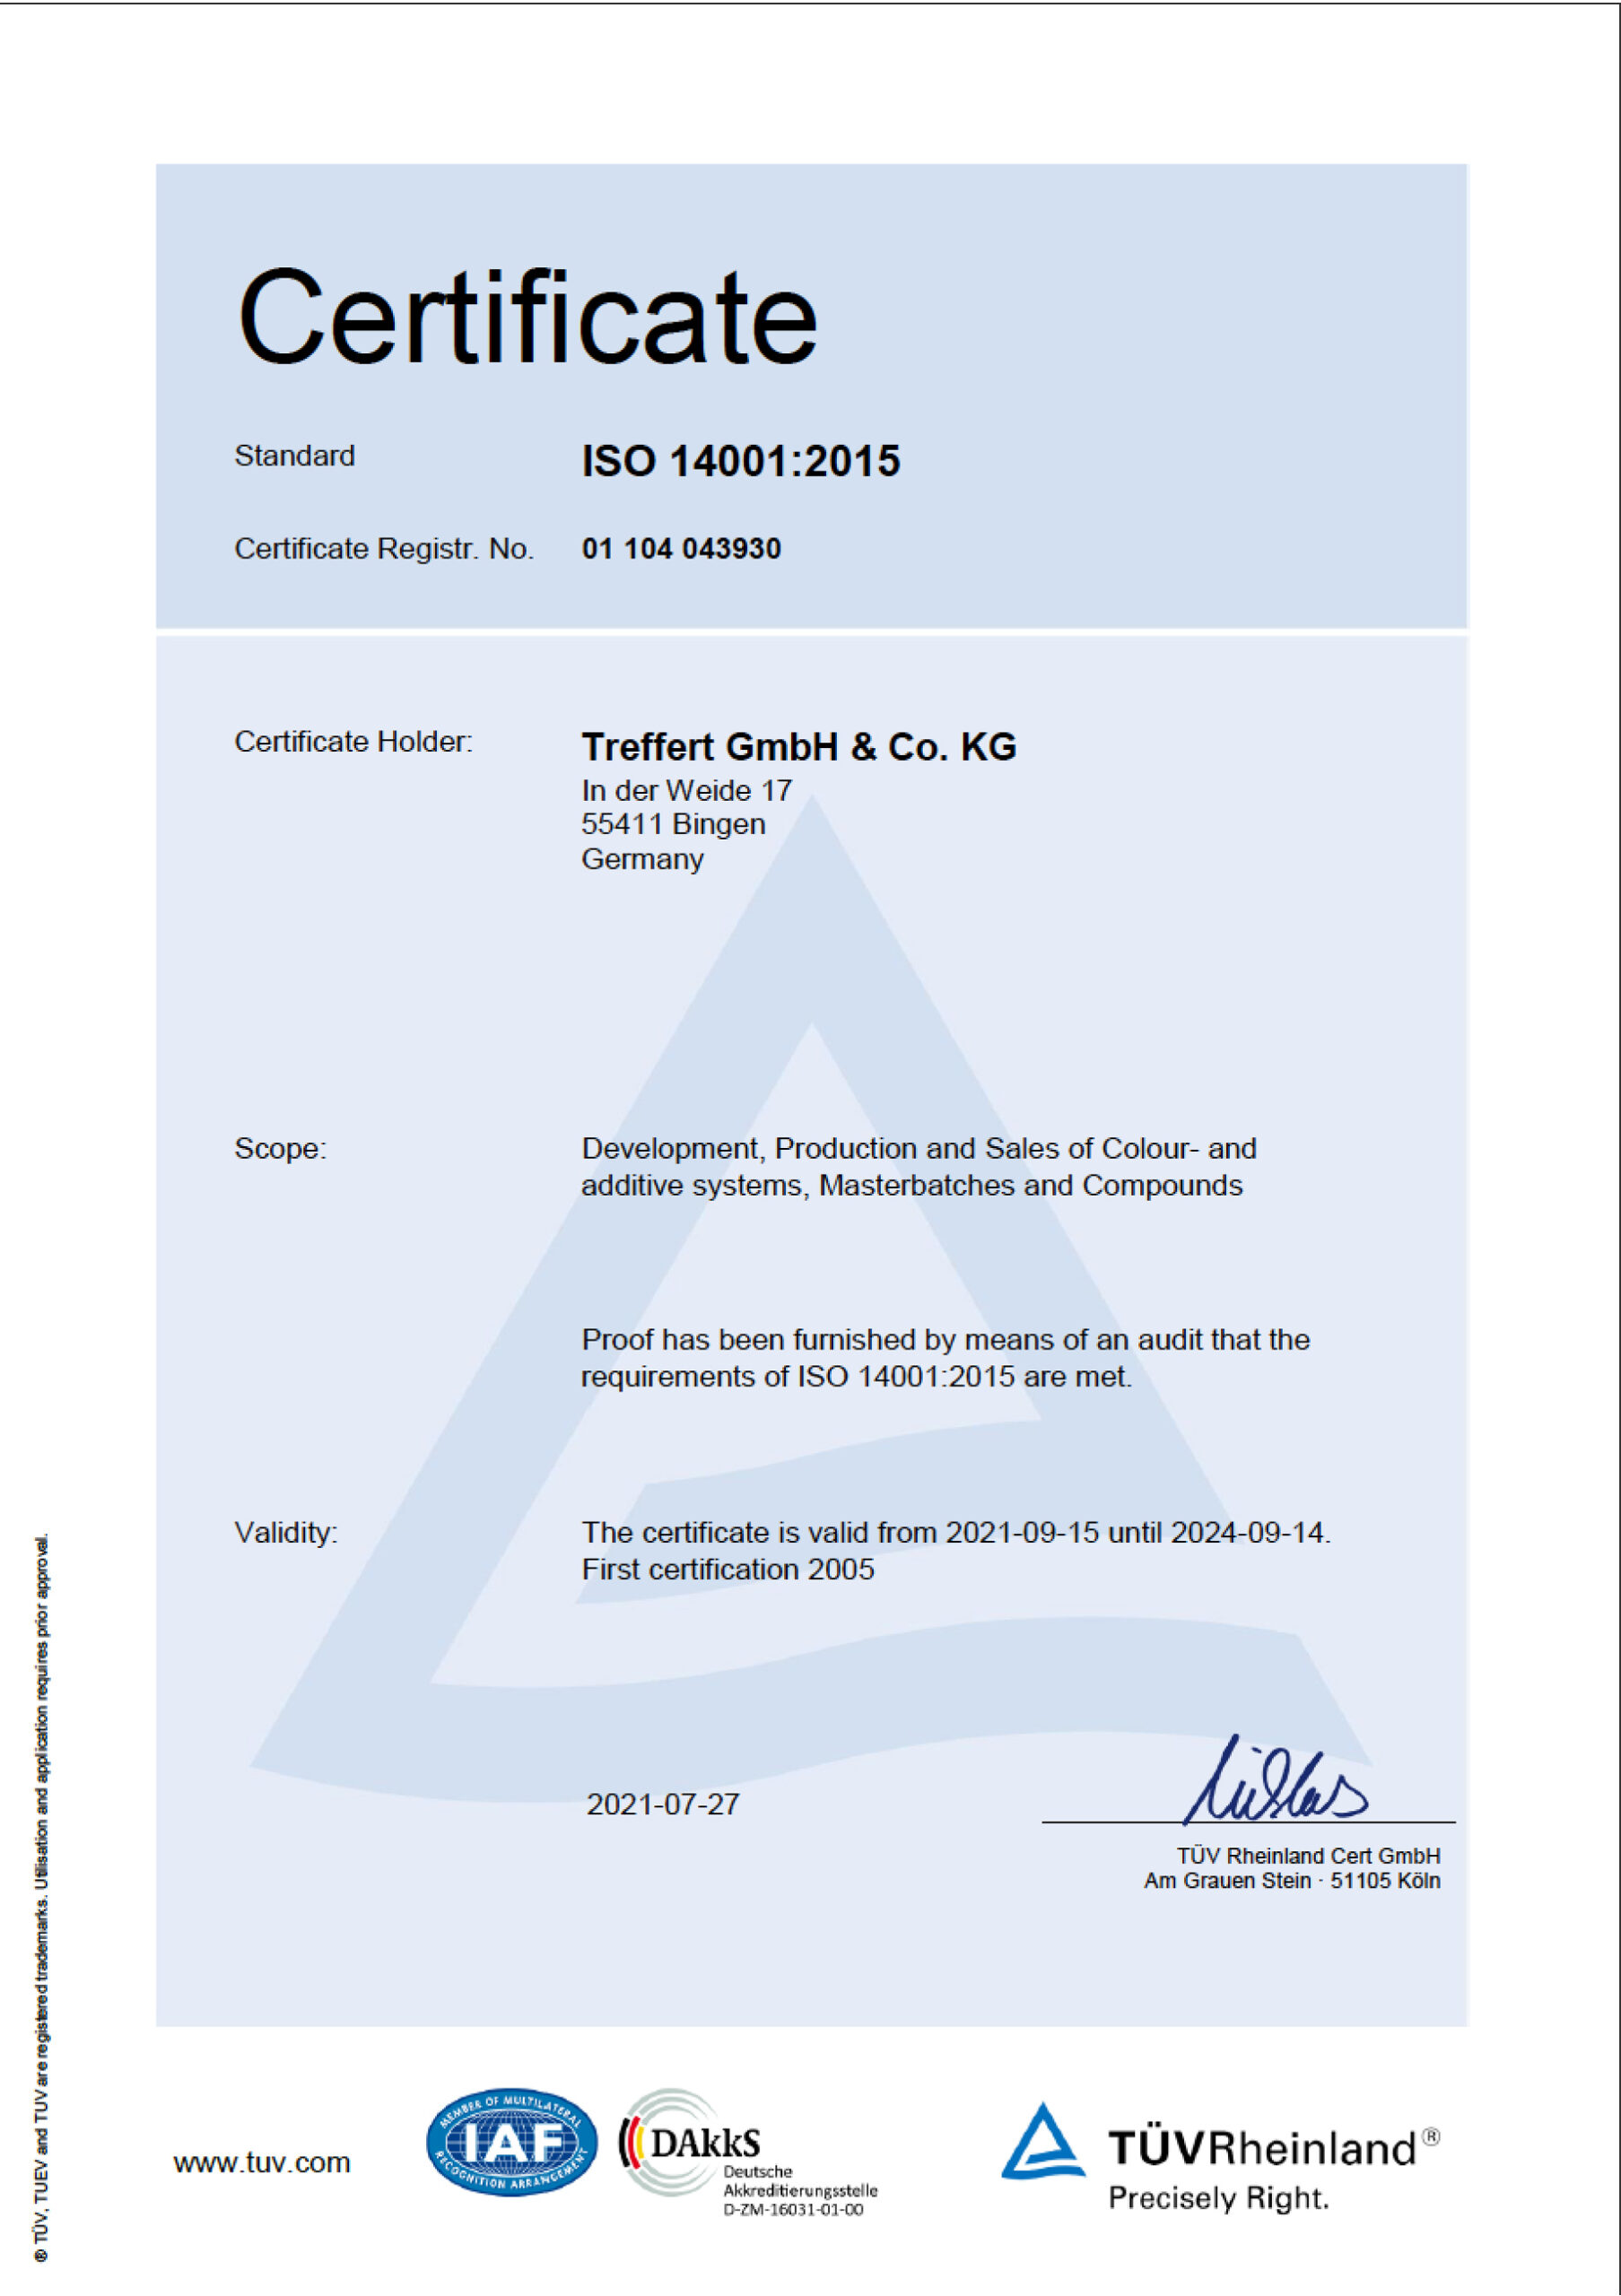 Treffert DIN EN ISO 14001 Certification